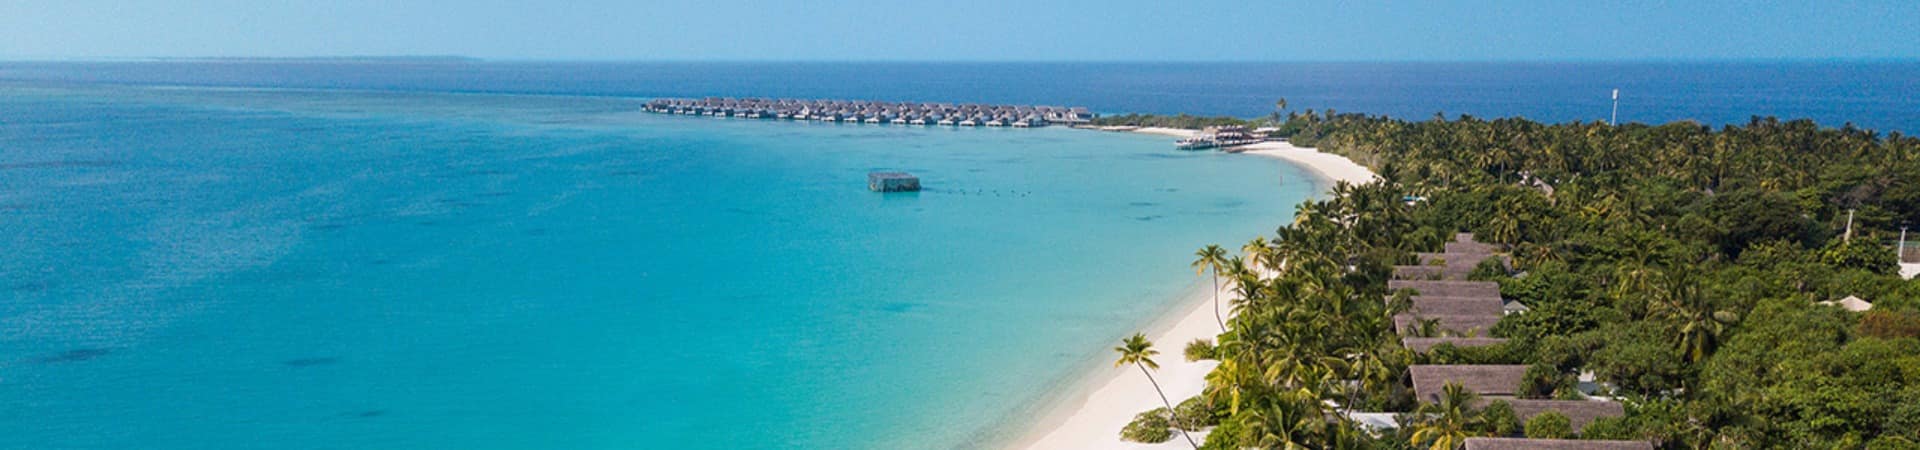 Fairmont maldives sirru fen fushi vista aerea da praia